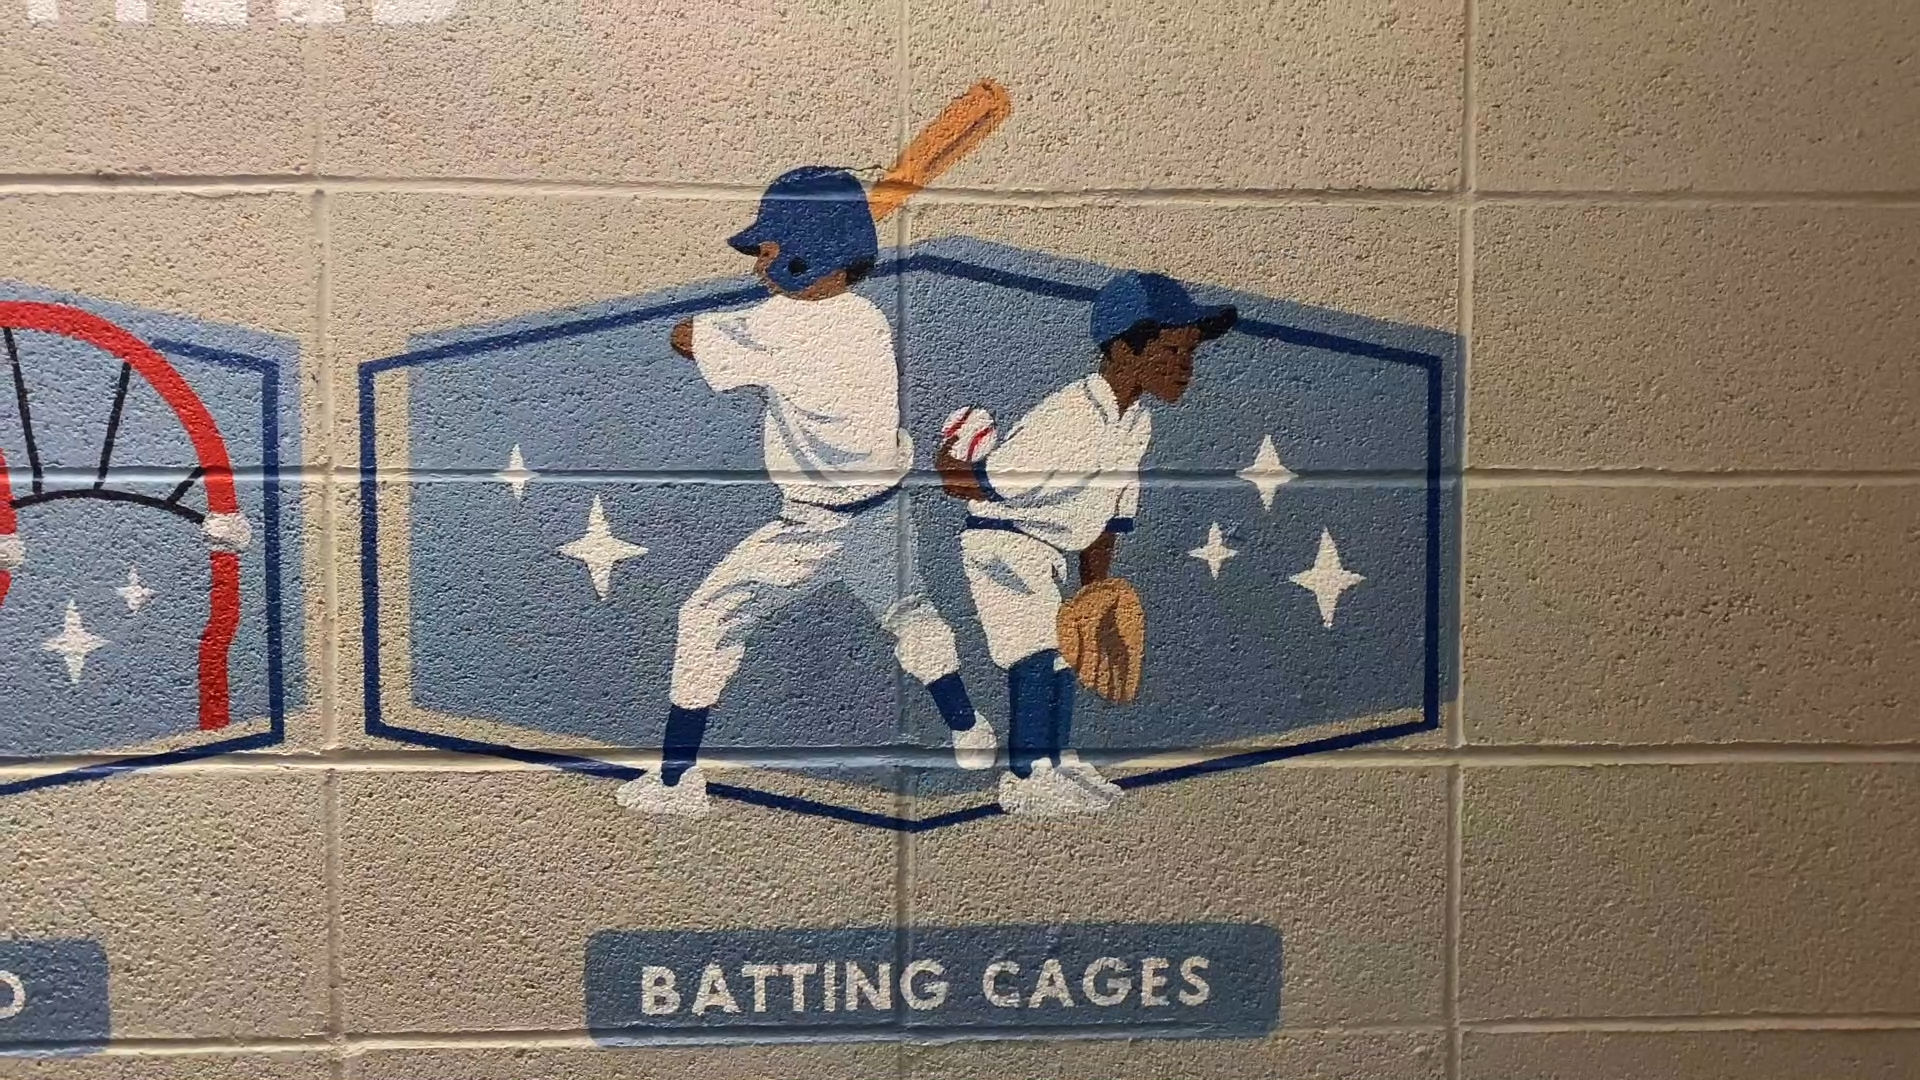 Batting Cage Dodger Stadium